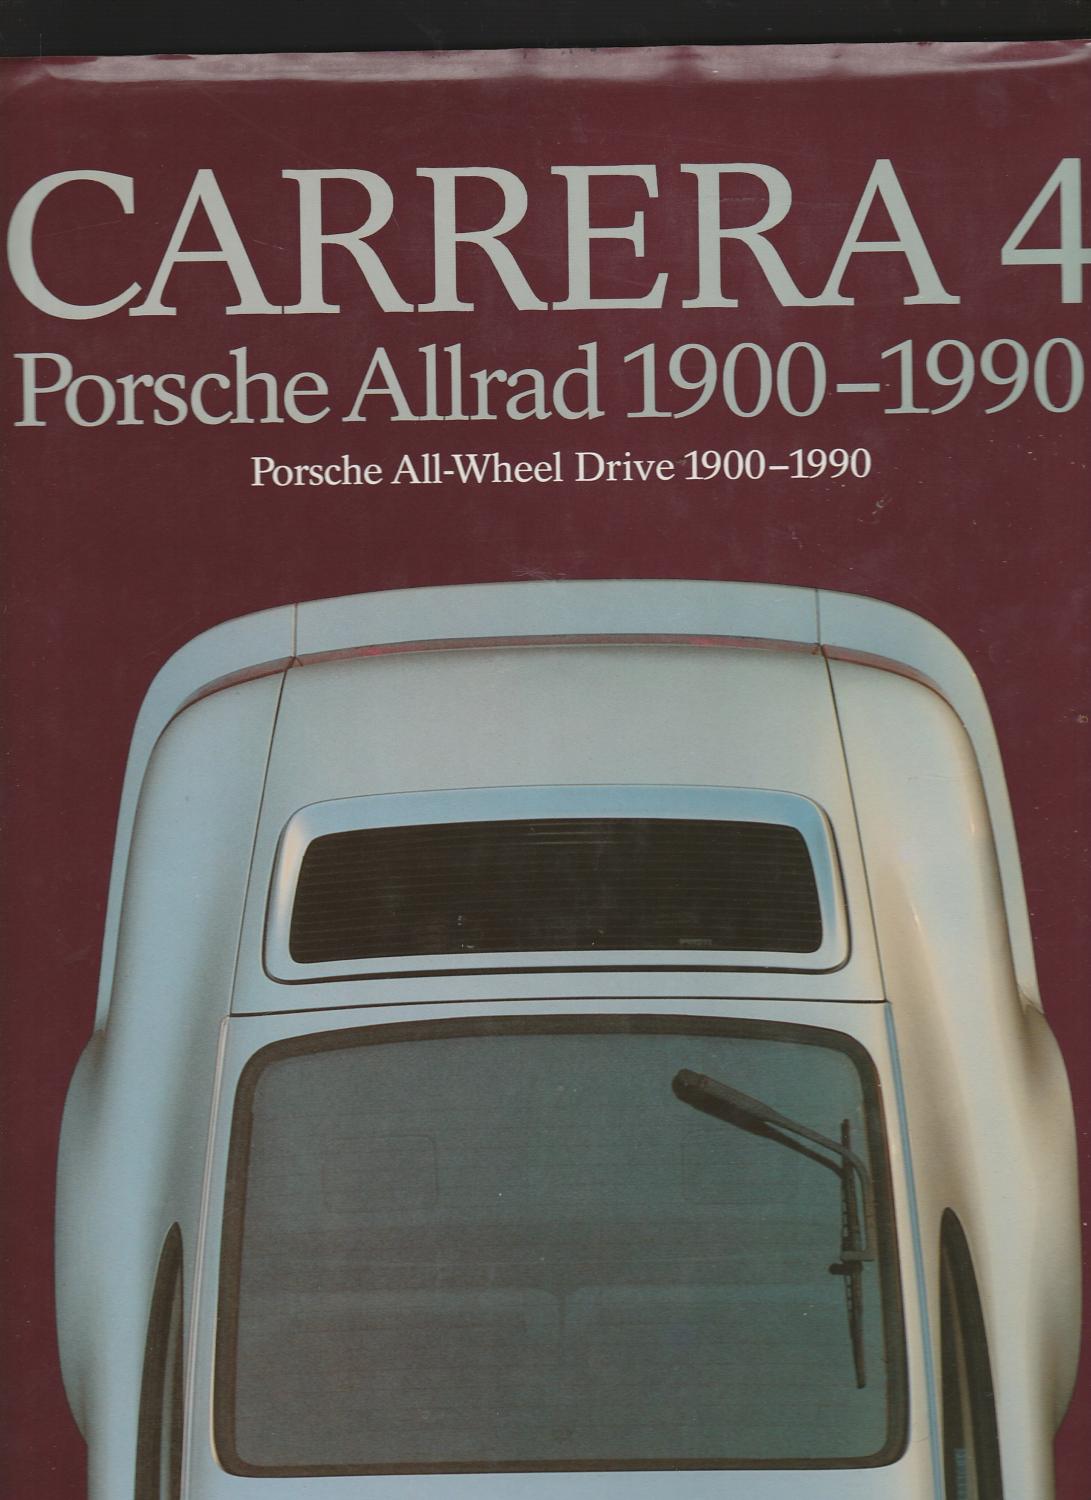 CARRERA 4: PORSCHE ALLRAD 1900-1990 by Herausgeber (ed.) | BOOK NOW